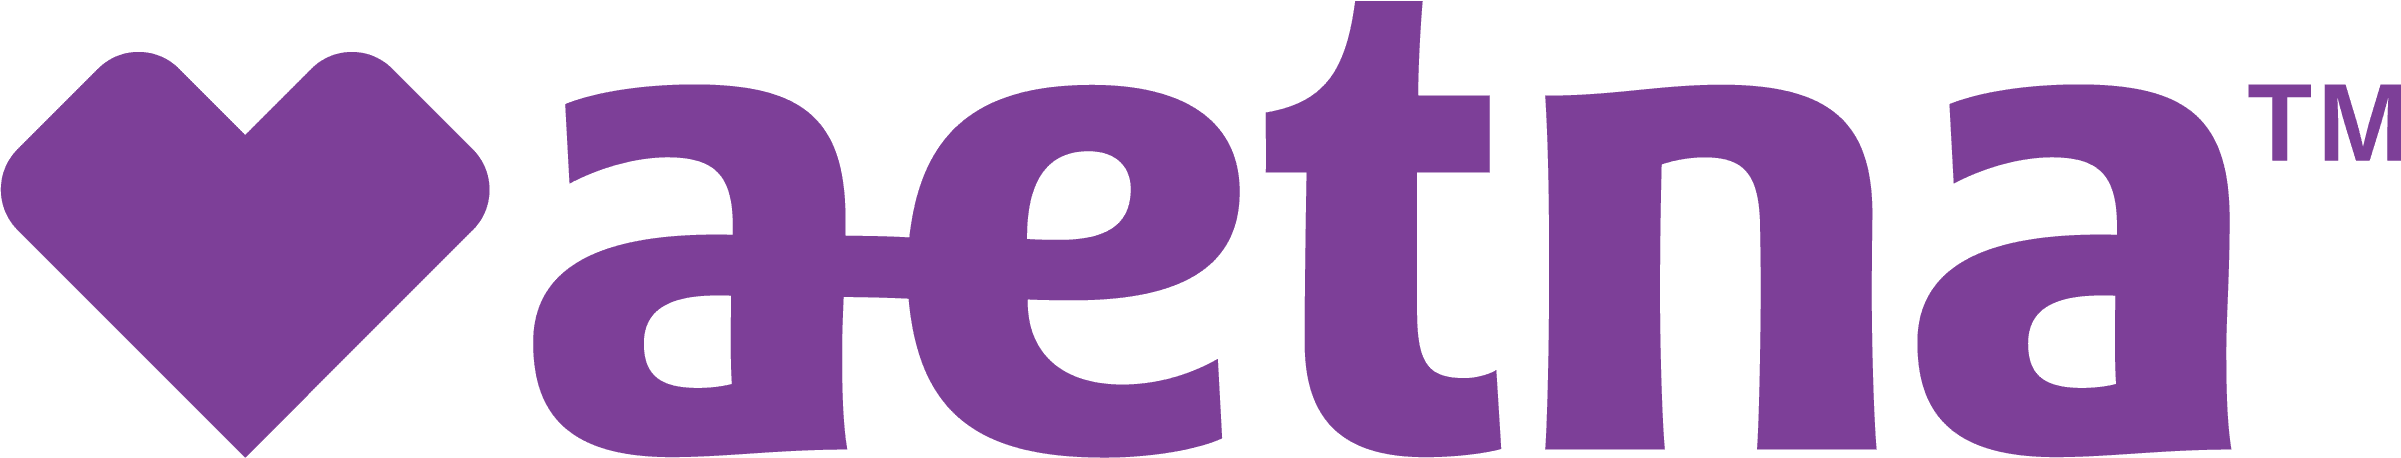 A purple letter e and t are shown.